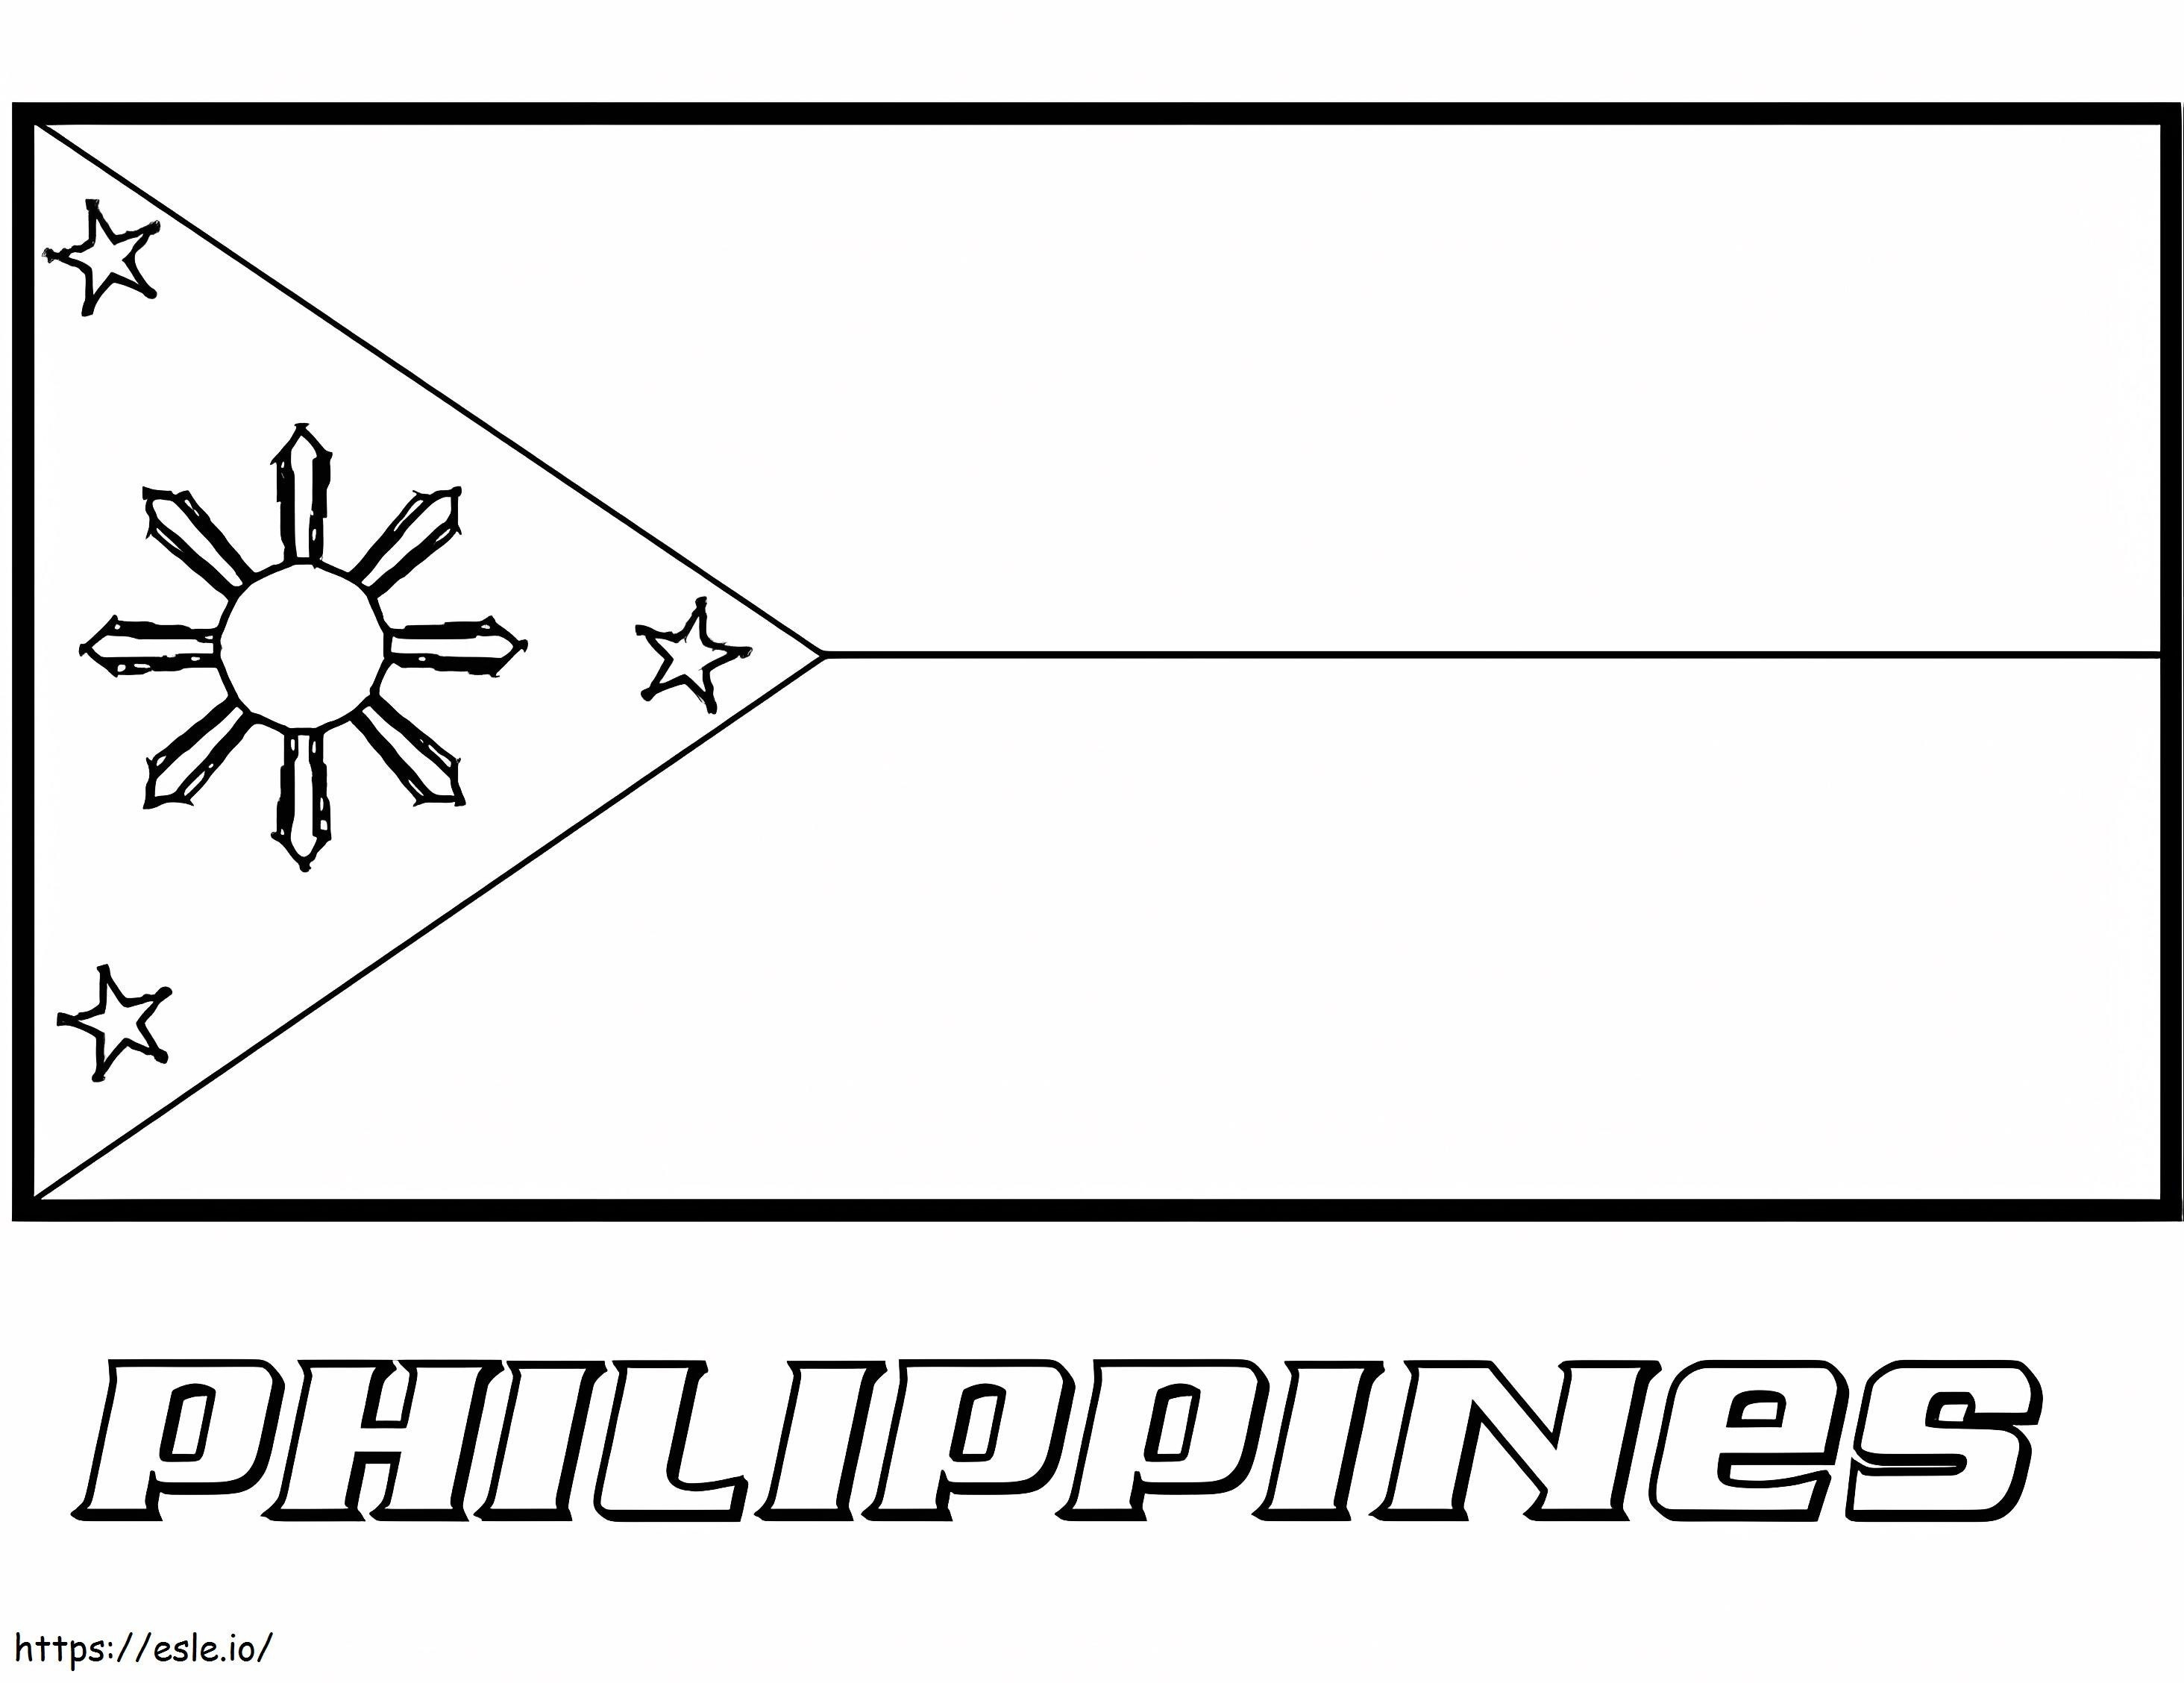 Bandiera delle Filippine da colorare